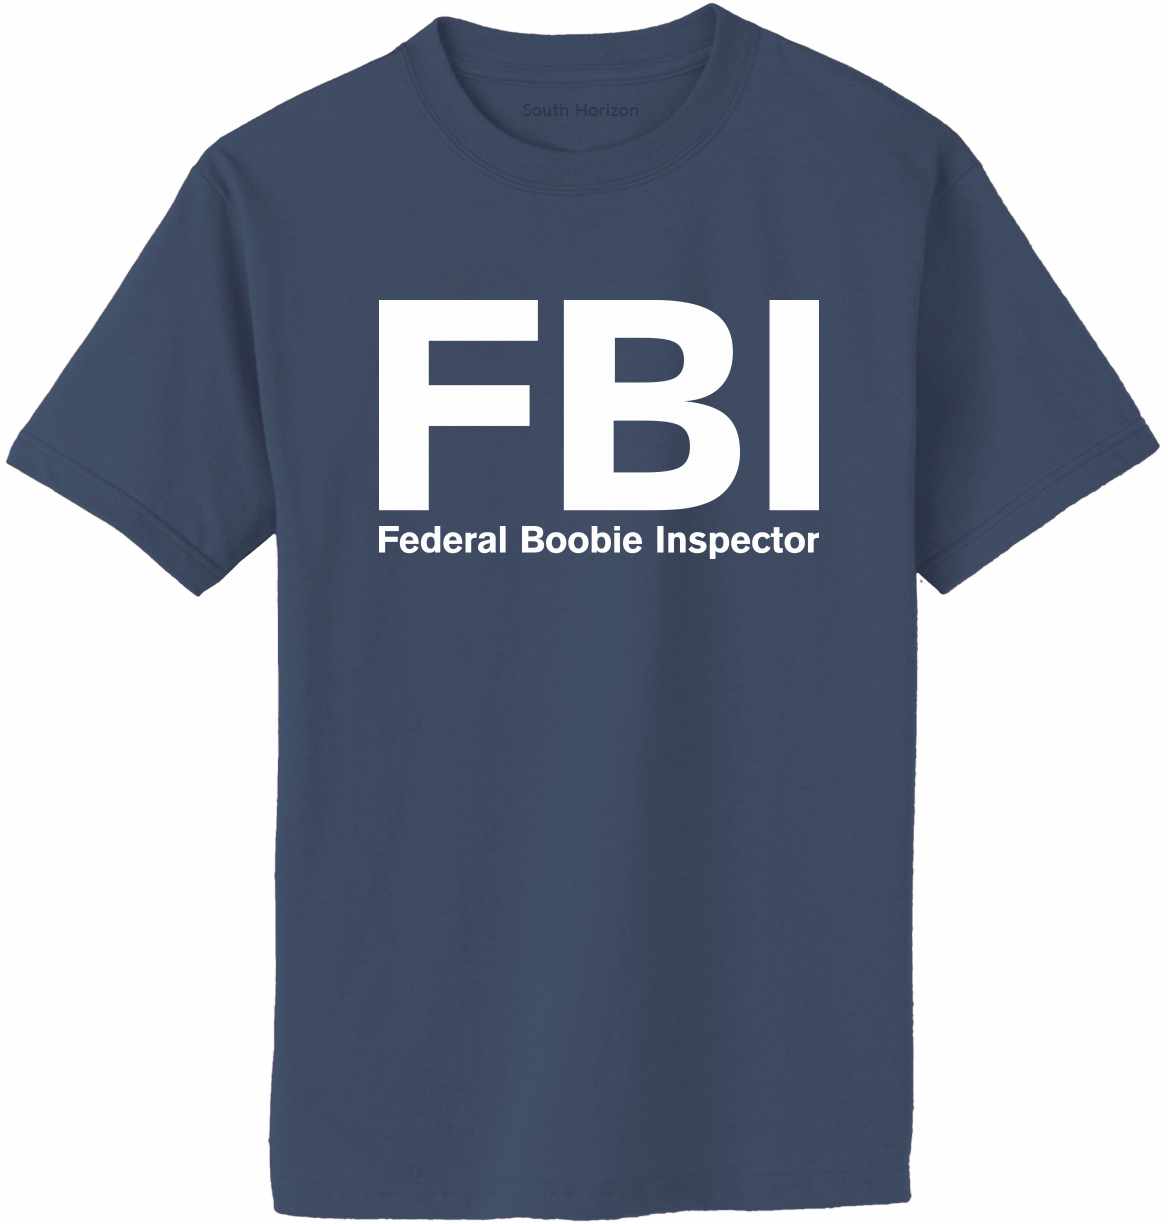 Federal Boobie Inspector Adult T-Shirt